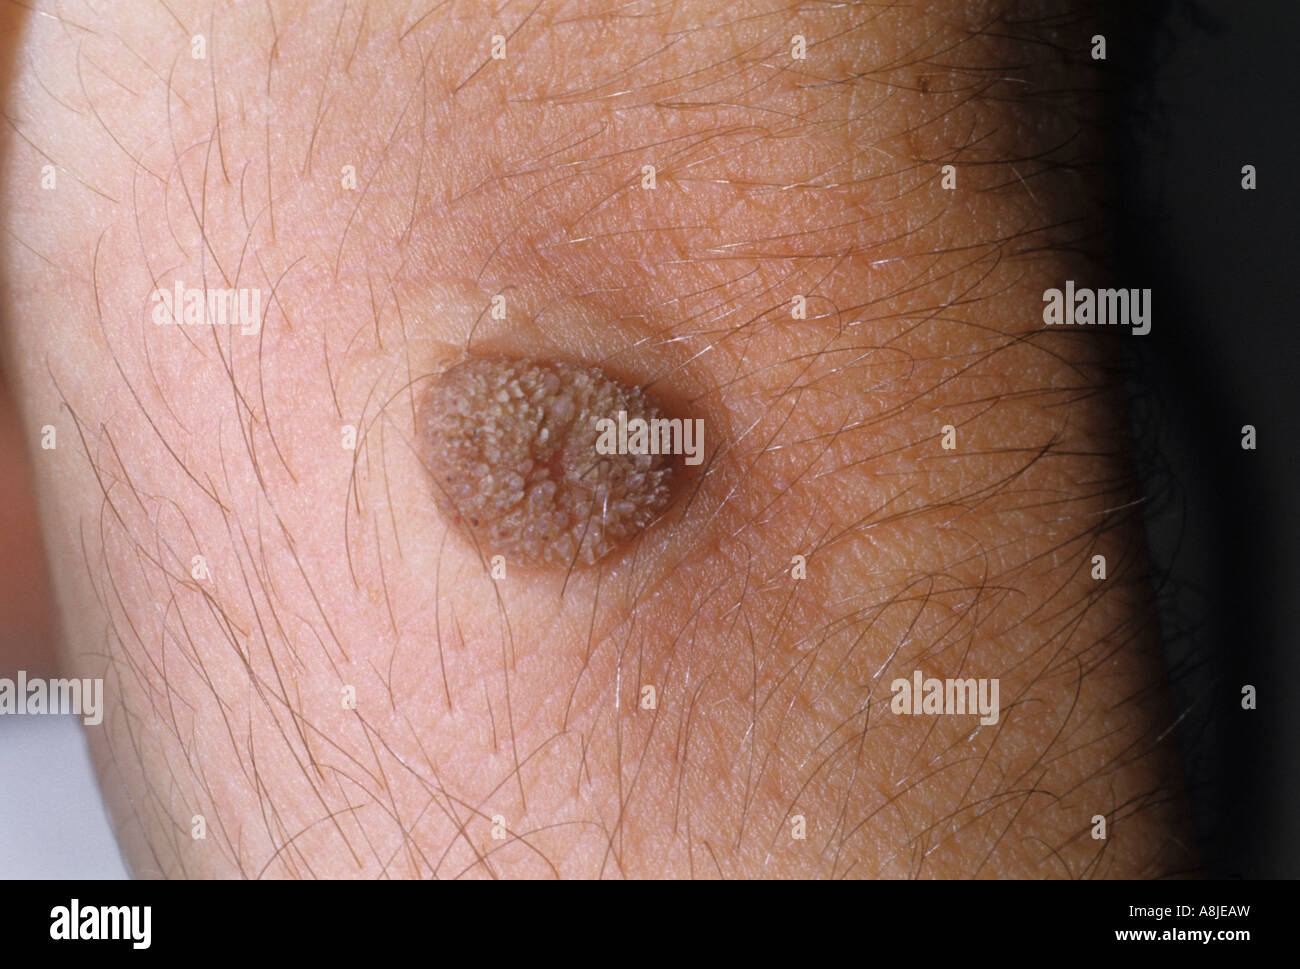 Verruca sul polso causate dall'HPV (papilloma virus umano). Foto Stock